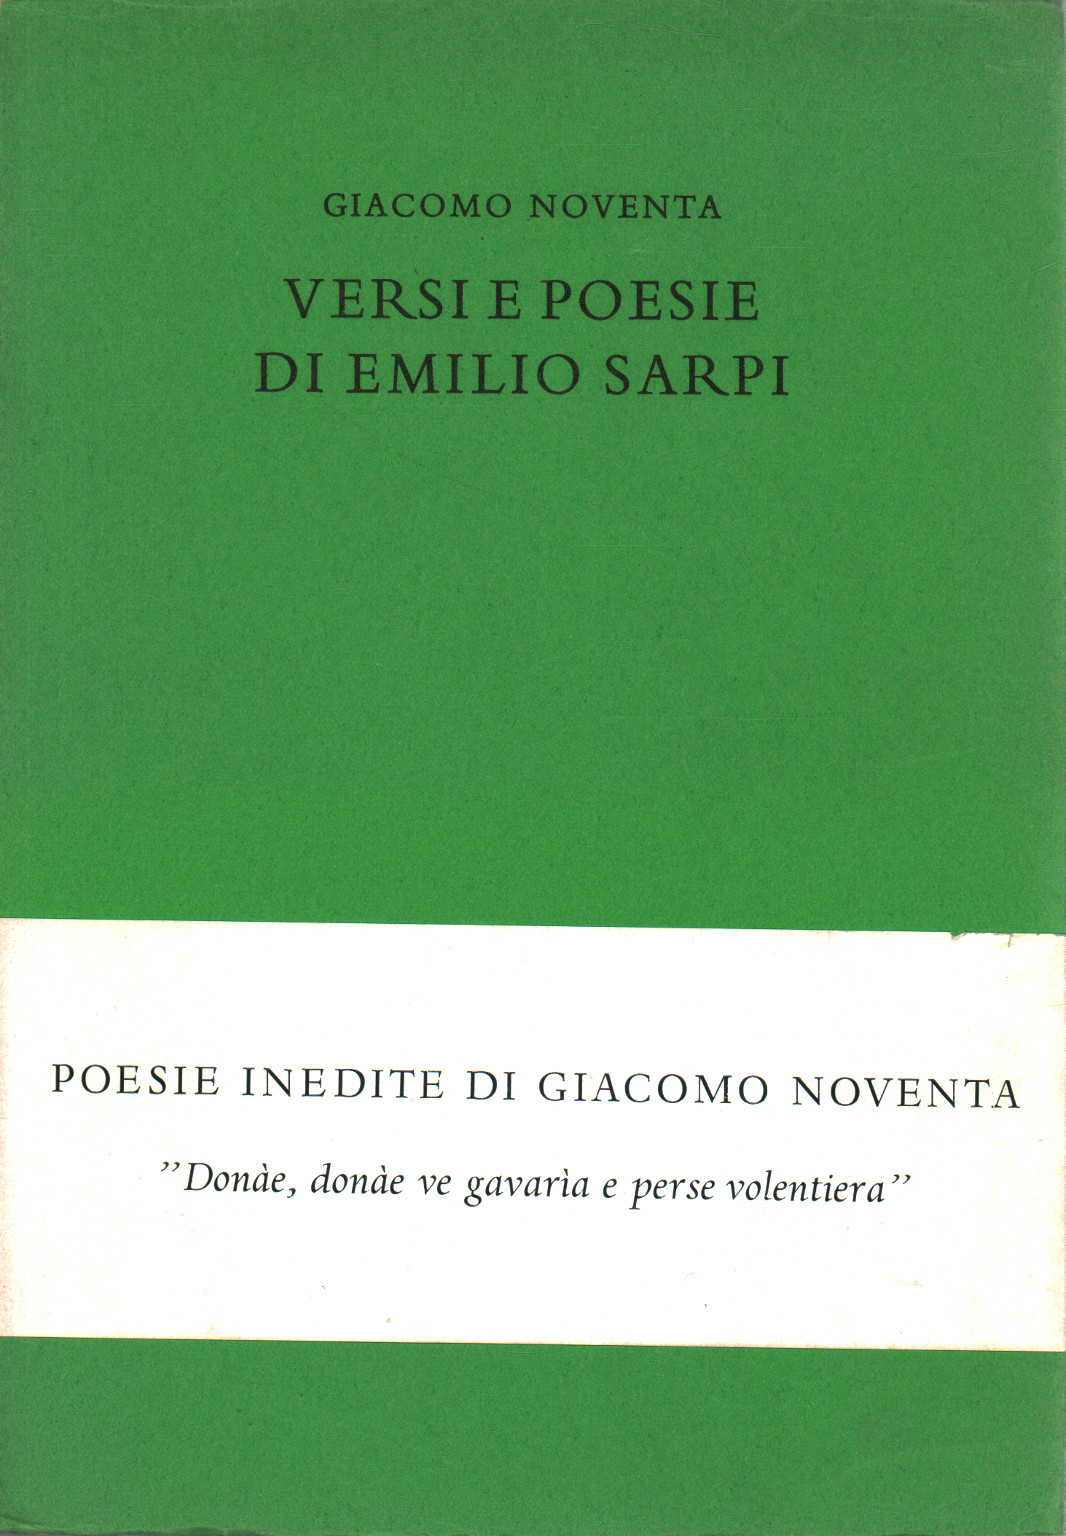 Versi e poesie di Emilio Sarpi, s.a.